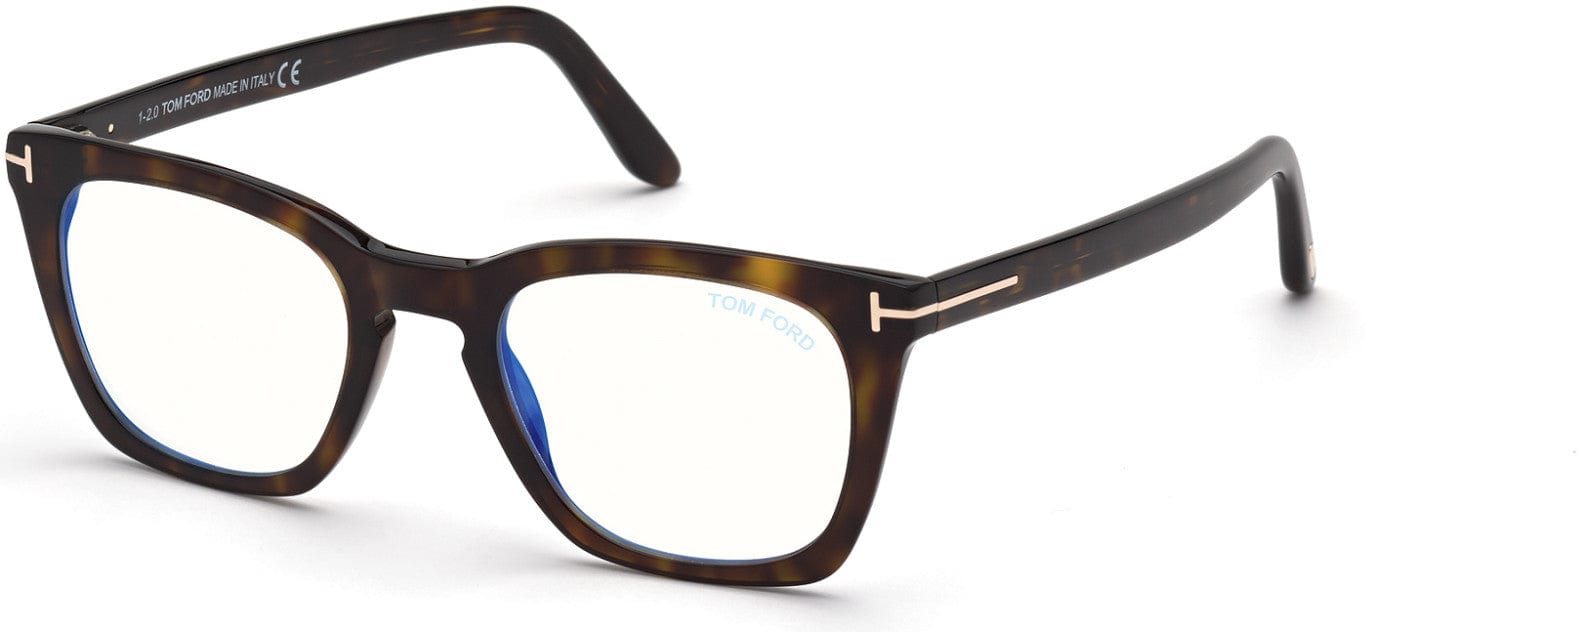 Tom Ford FT5736-B Square Eyeglasses 052-052 - Shiny Dark Havana, Shiny Rose Gold "t" Logo / Blue Block Lenses